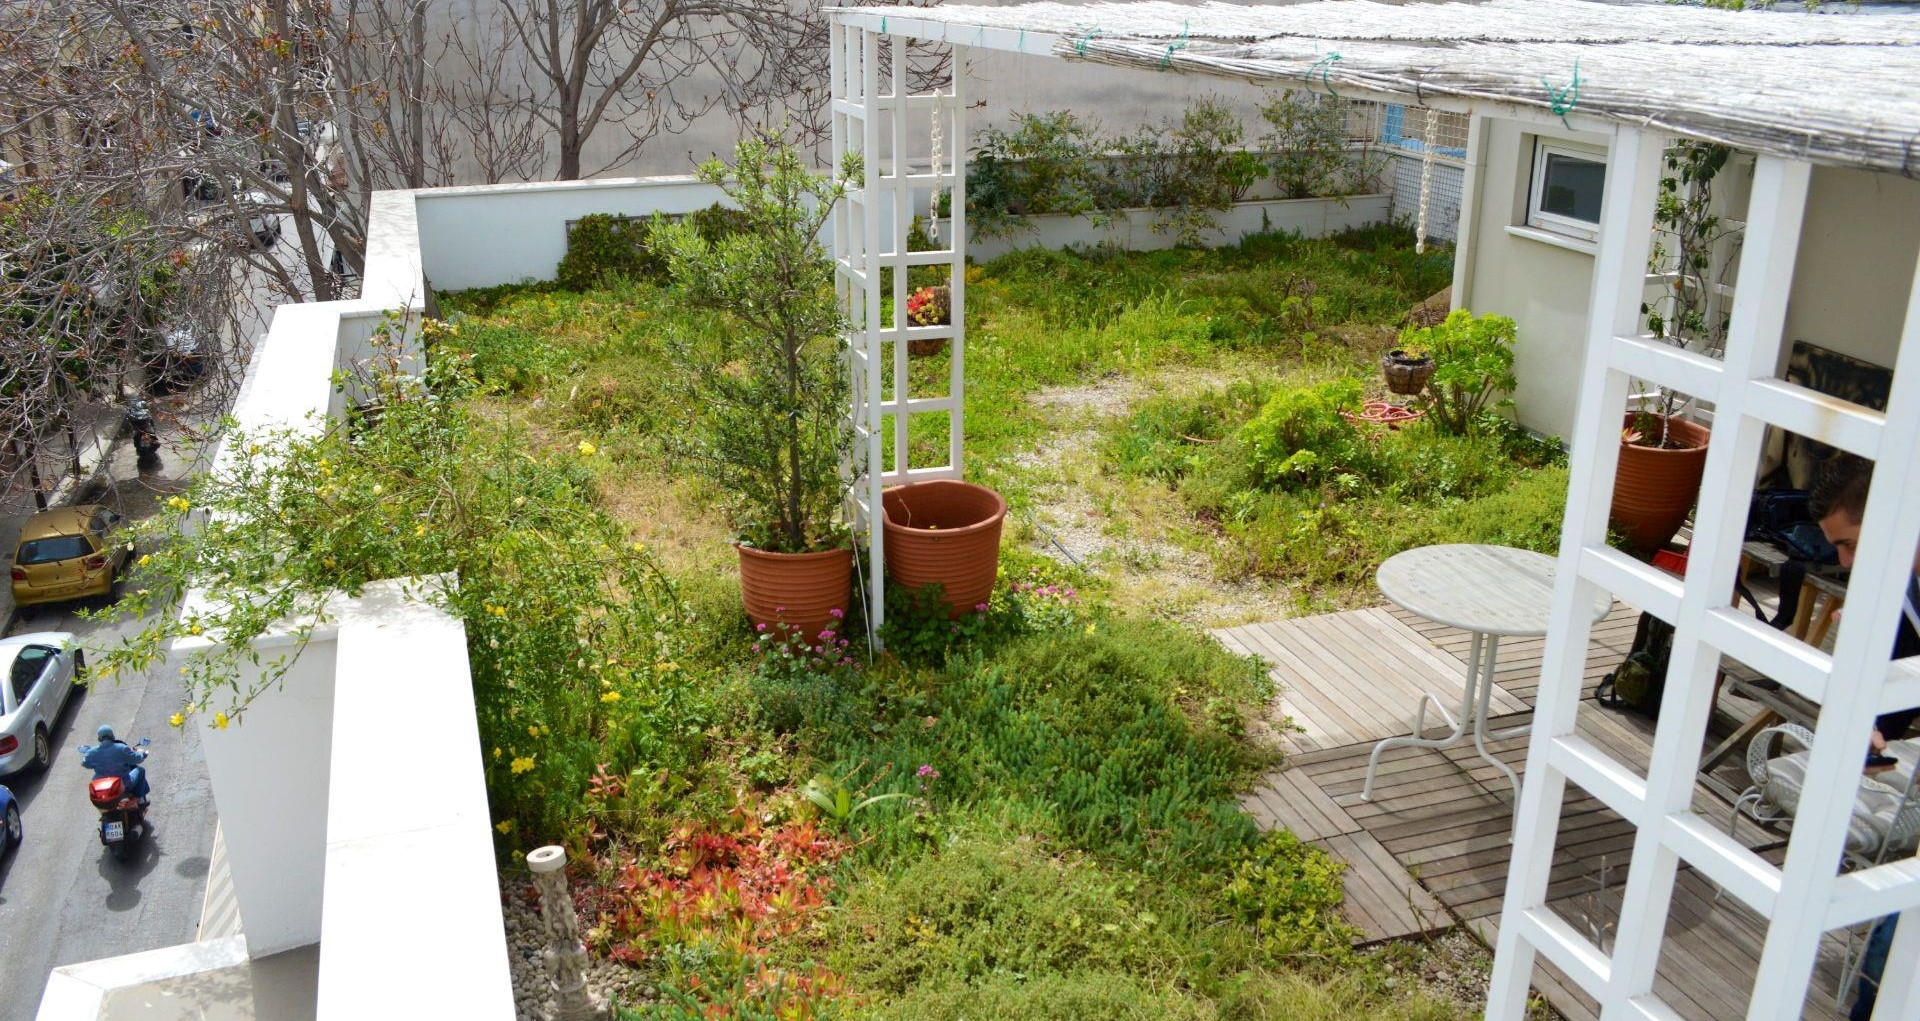 Apmācību modulis “Zaļo jumtu integrācija vietējās kopienas ilgtspējībā”